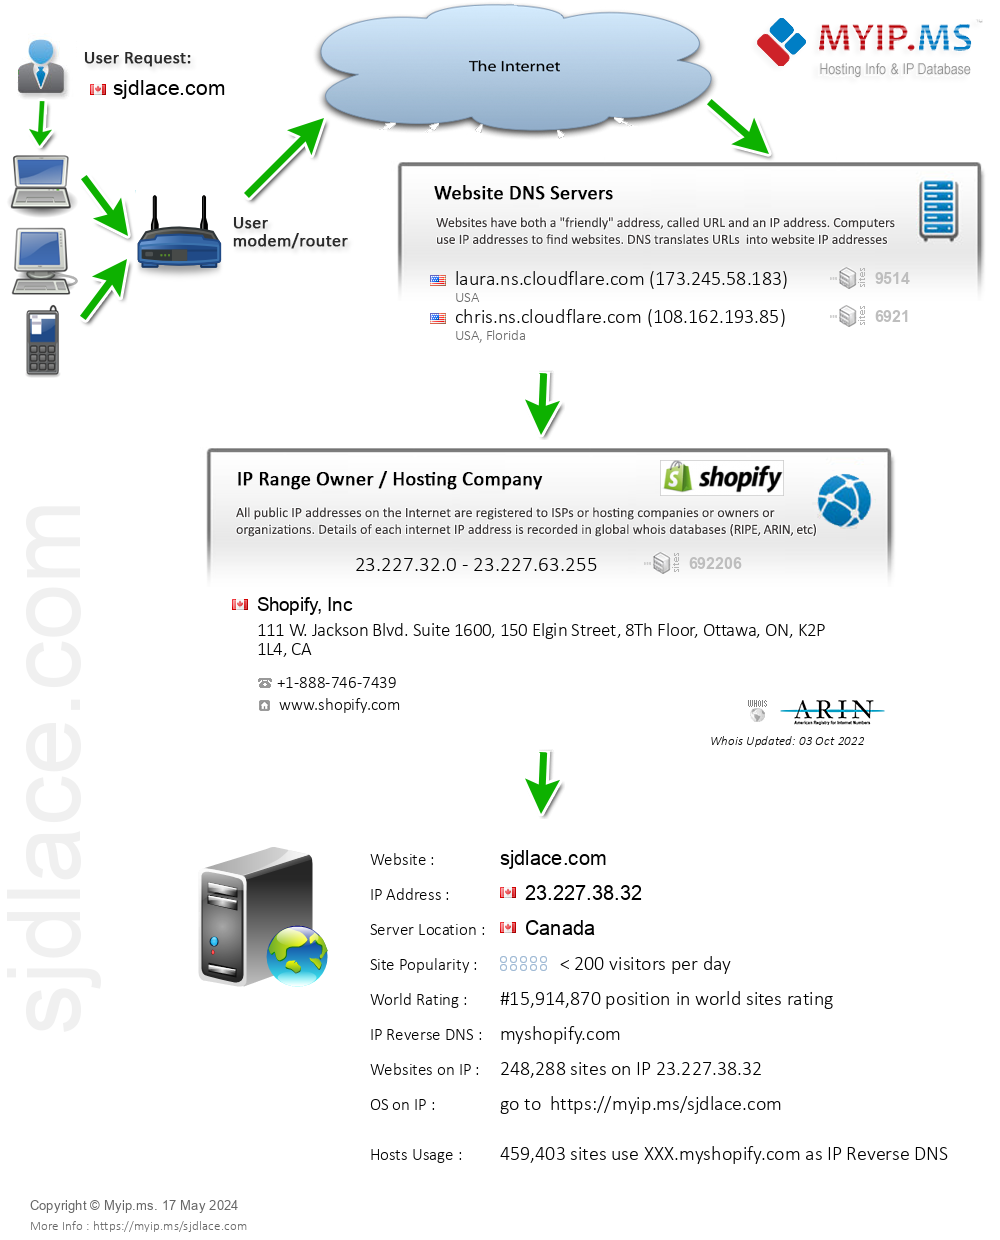 Sjdlace.com - Website Hosting Visual IP Diagram